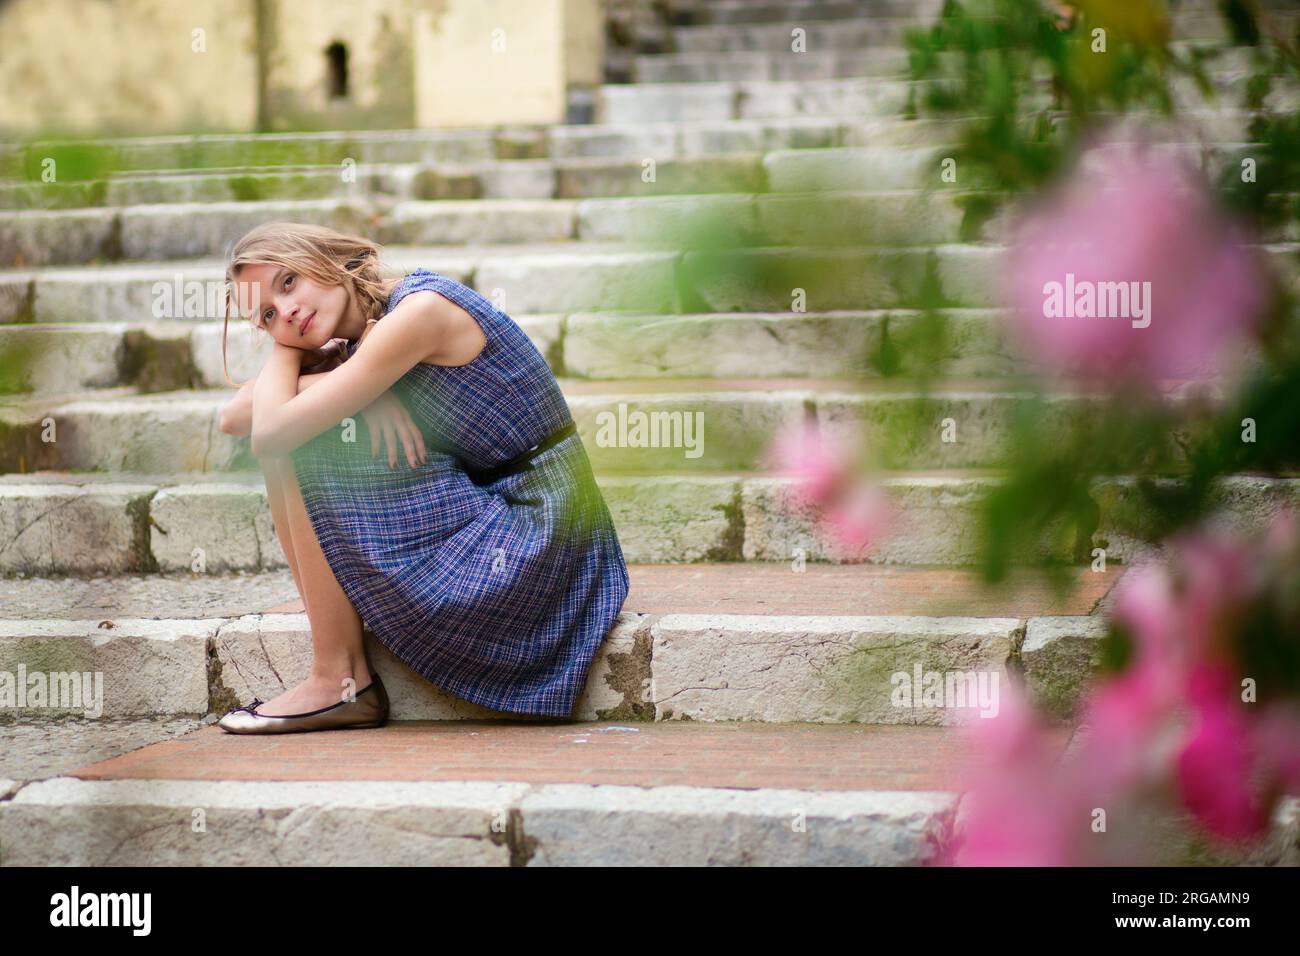 Belle jeune fille assise sur les escaliers dans une rue Banque D'Images